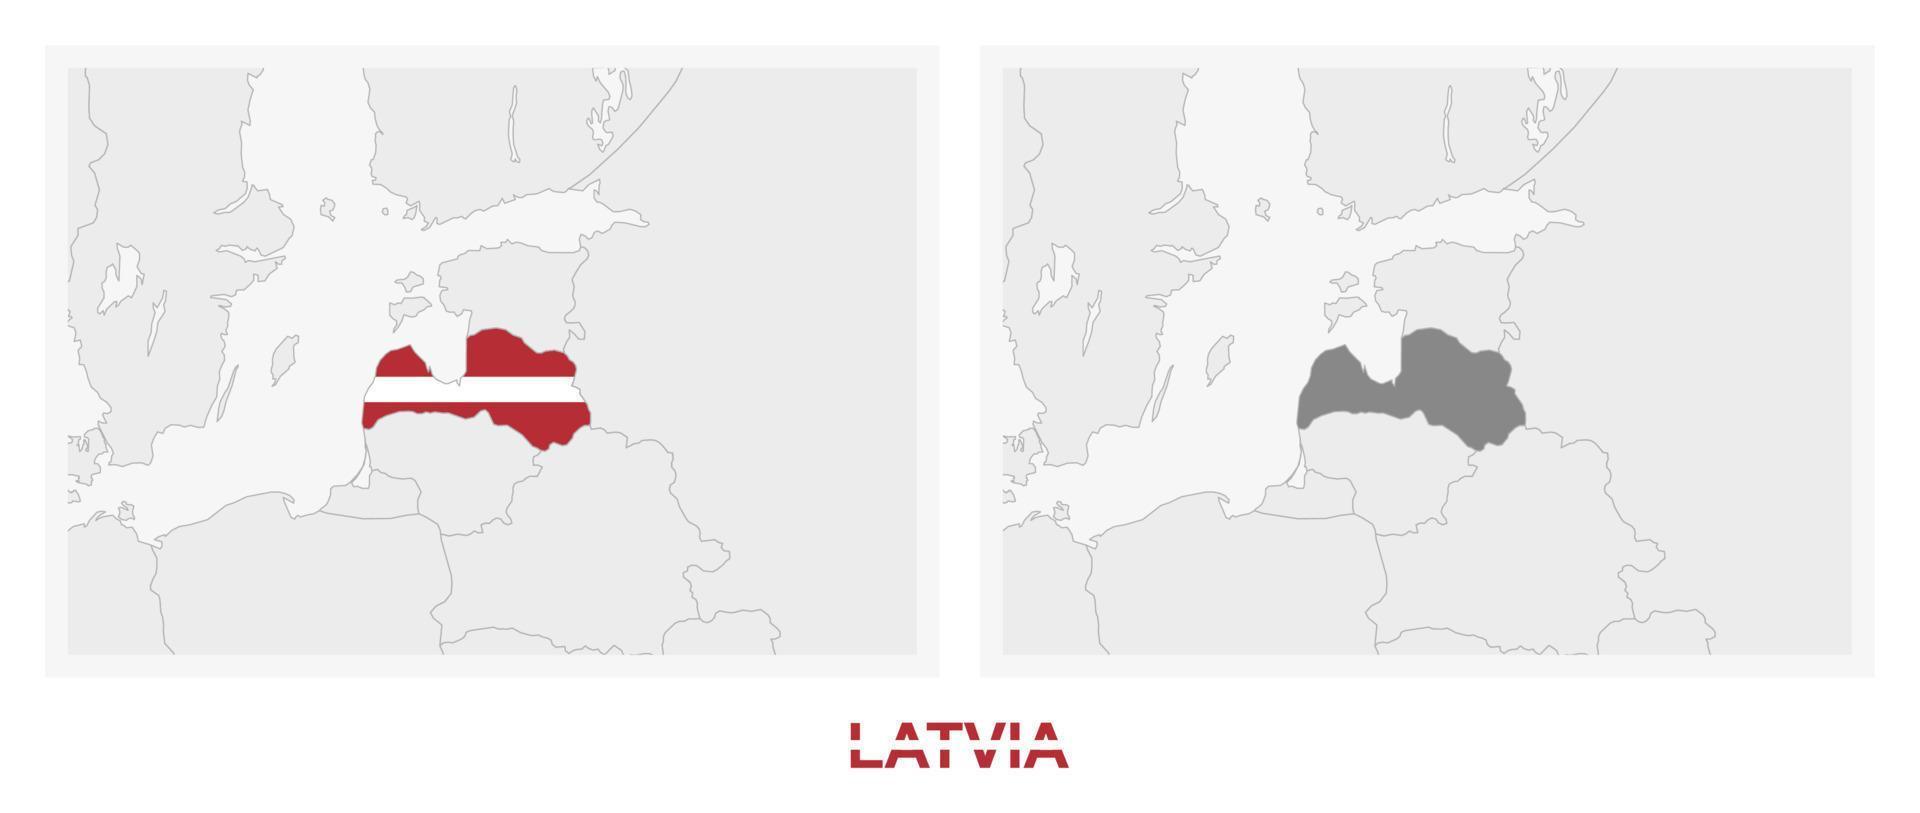 zwei versionen der karte von lettland, mit der flagge von lettland und dunkelgrau hervorgehoben. vektor